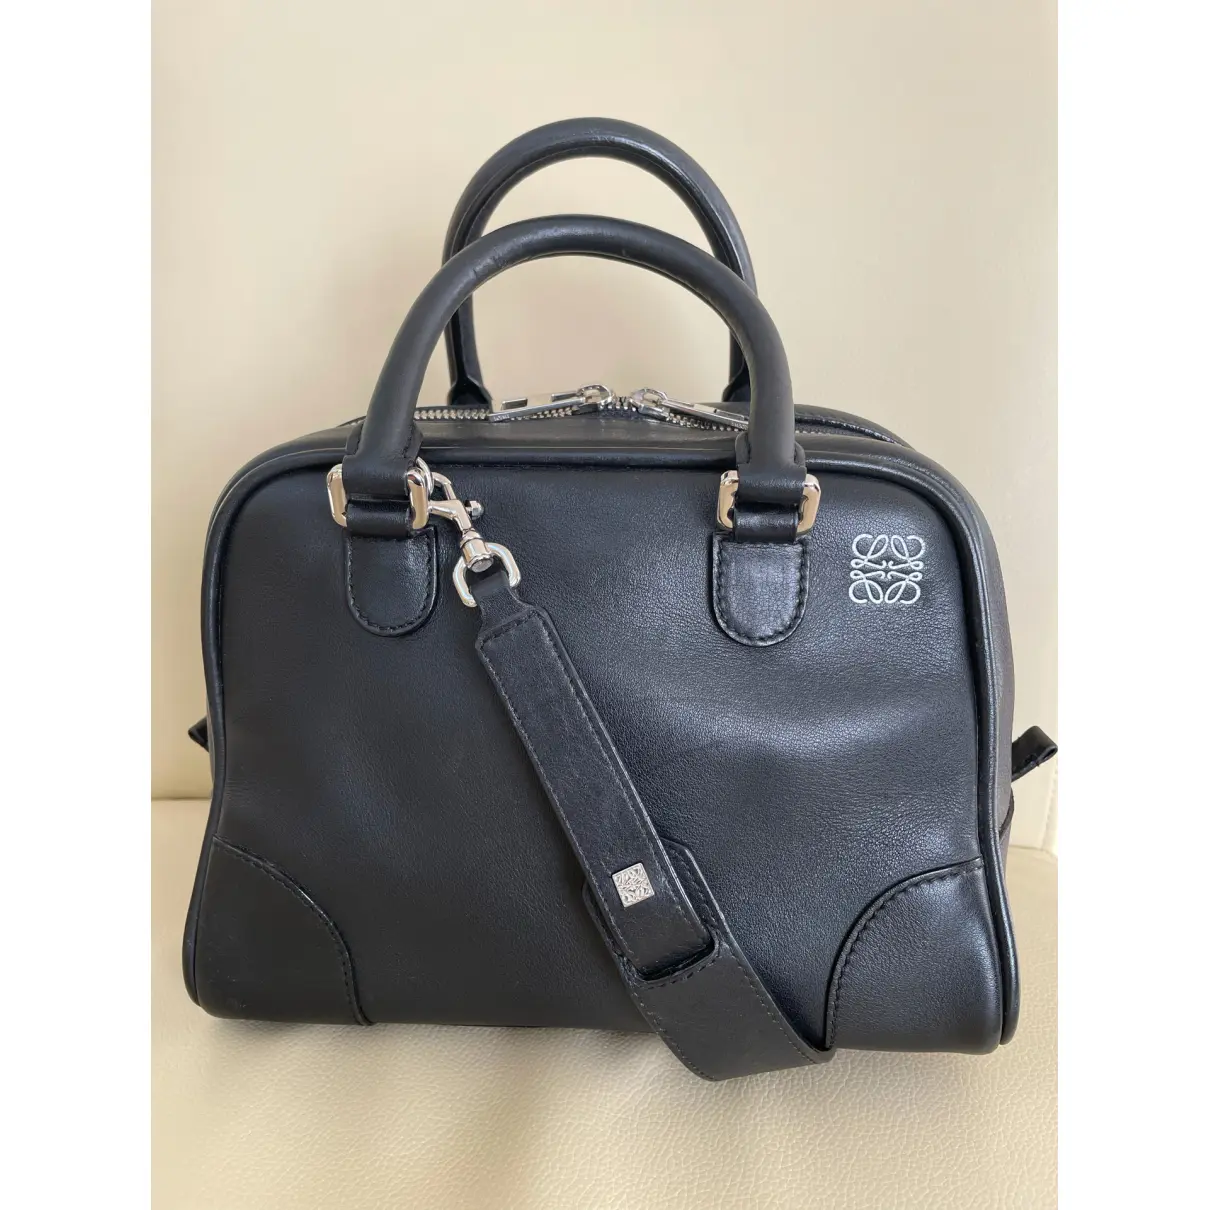 Buy Loewe Amazona 75 leather handbag online